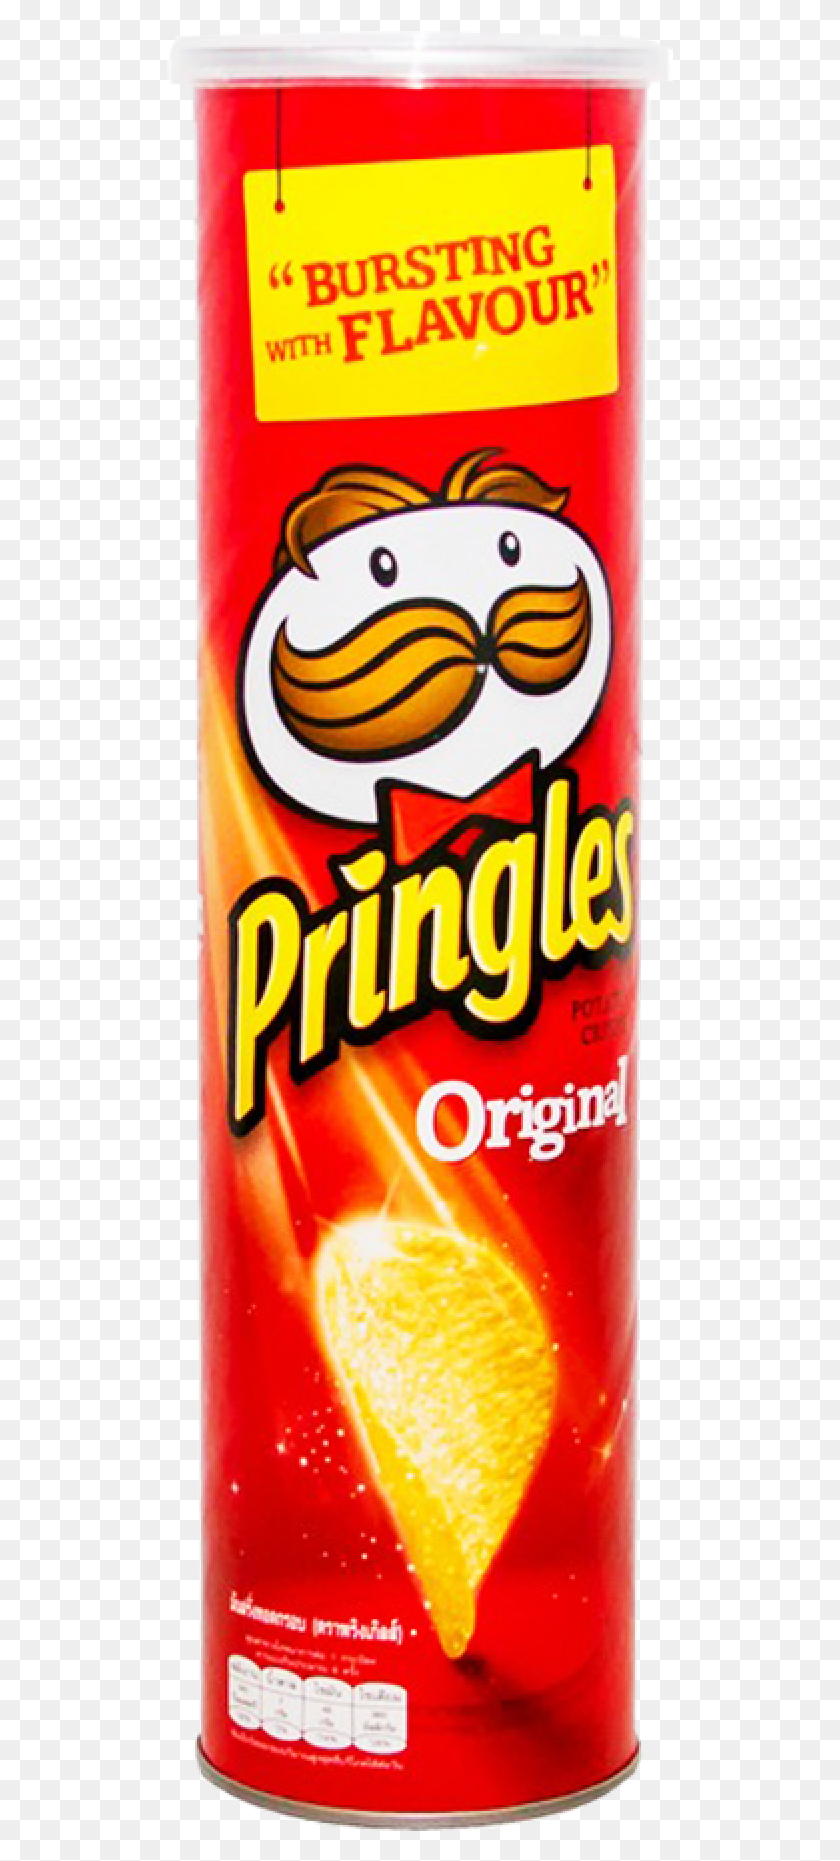 507x1801 Descargar Png Pringles Chips Original 150 Gm Mr Potato Chips, Lata, Botella De Pop, Bebida Hd Png